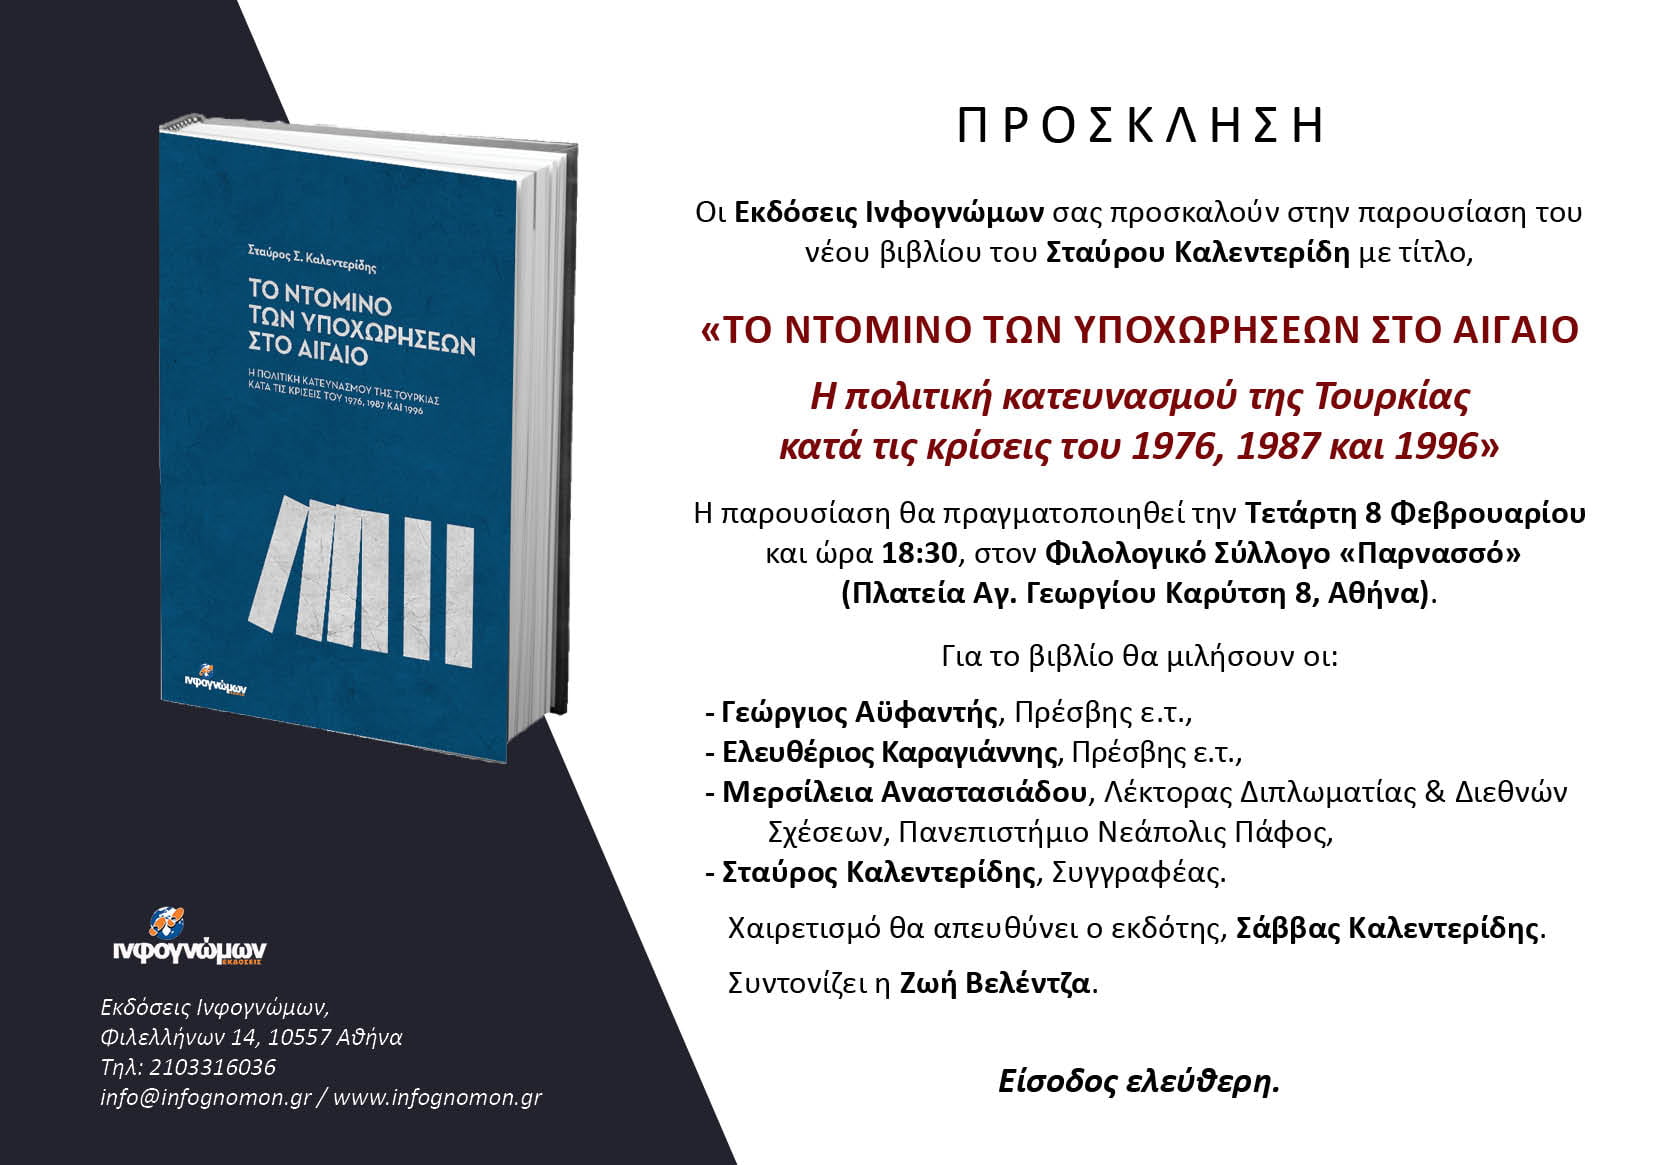 Τετάρτη 8 Φεβρουαρίου 2023! Η παρουσίαση του βιβλίου του Σταύρου Καλεντερίδη “Το ντόμινο των υποχωρήσεων στο Αιγαίο”